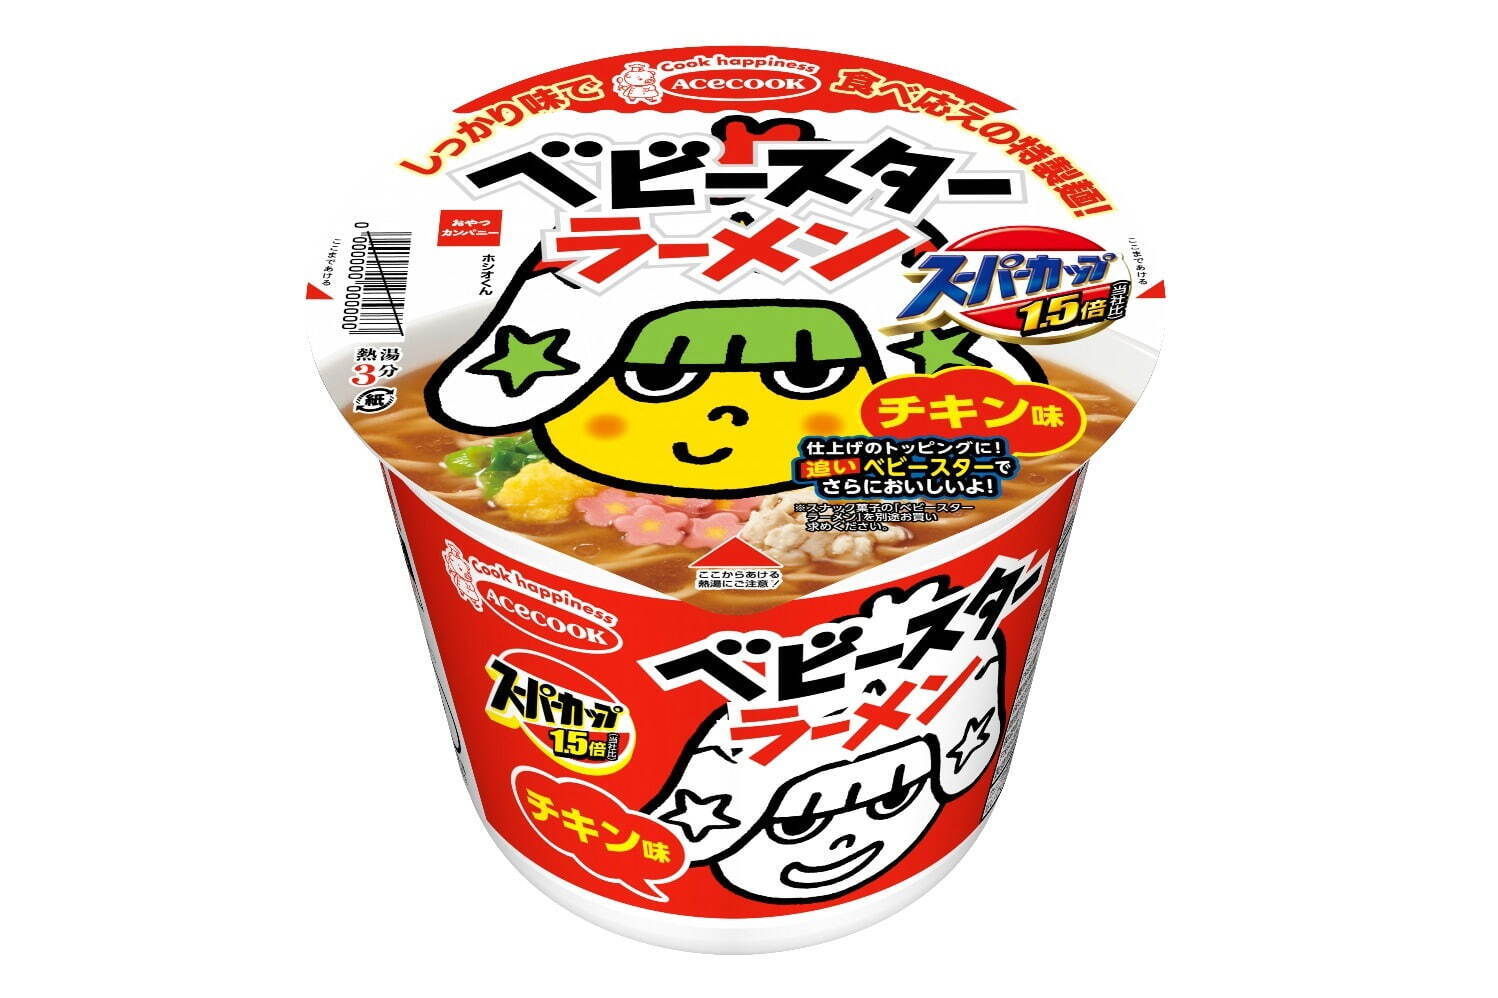 おつまみ お菓子 カップ麺 | www.mdh.com.sa